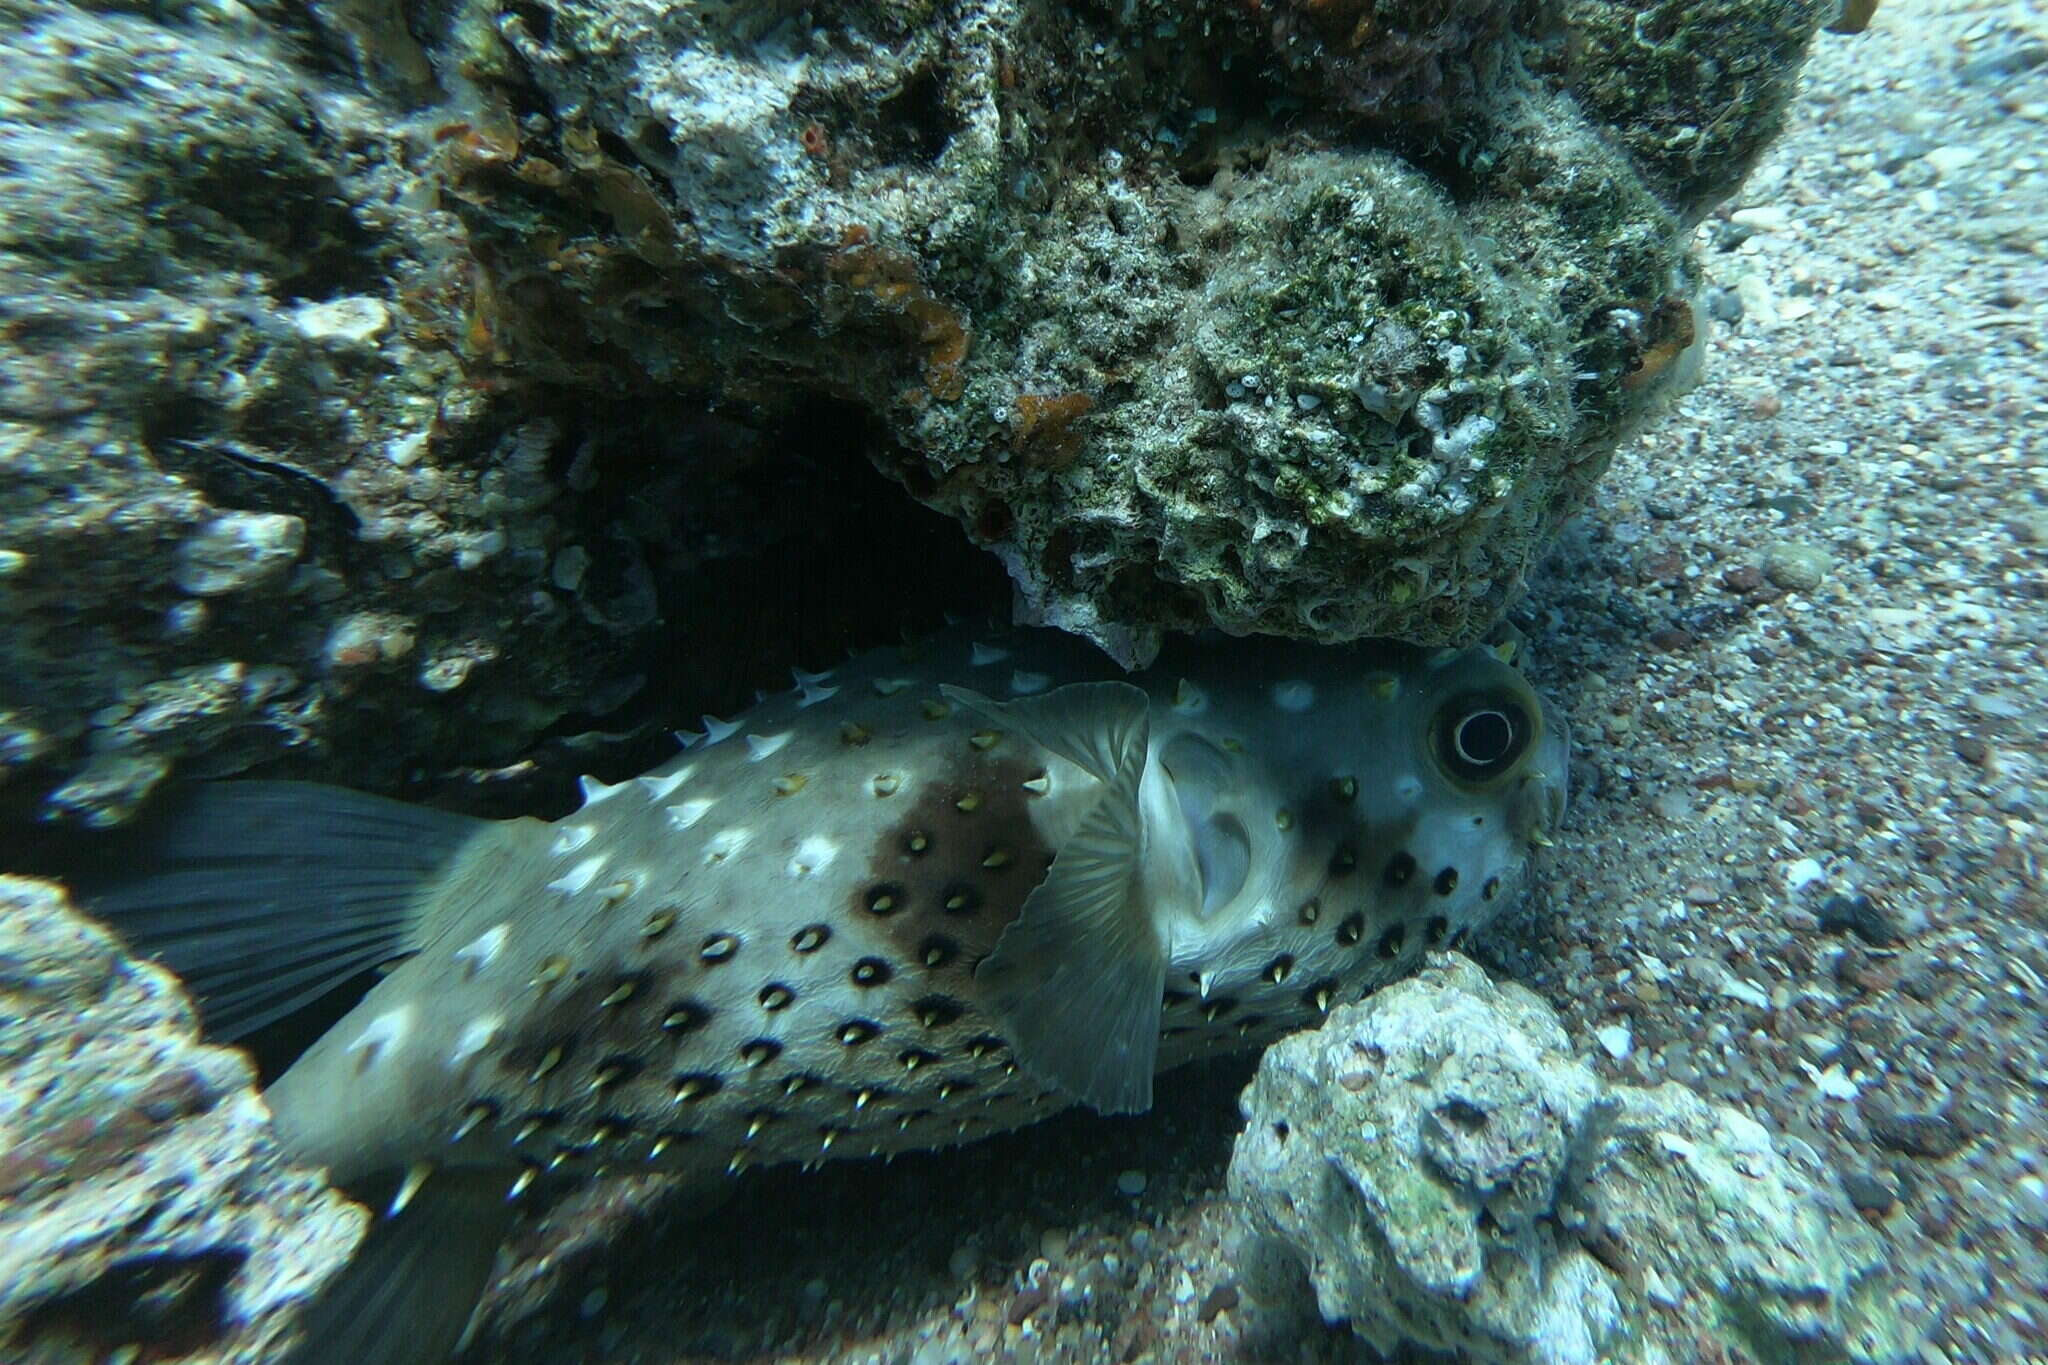 Image of Ballonfish